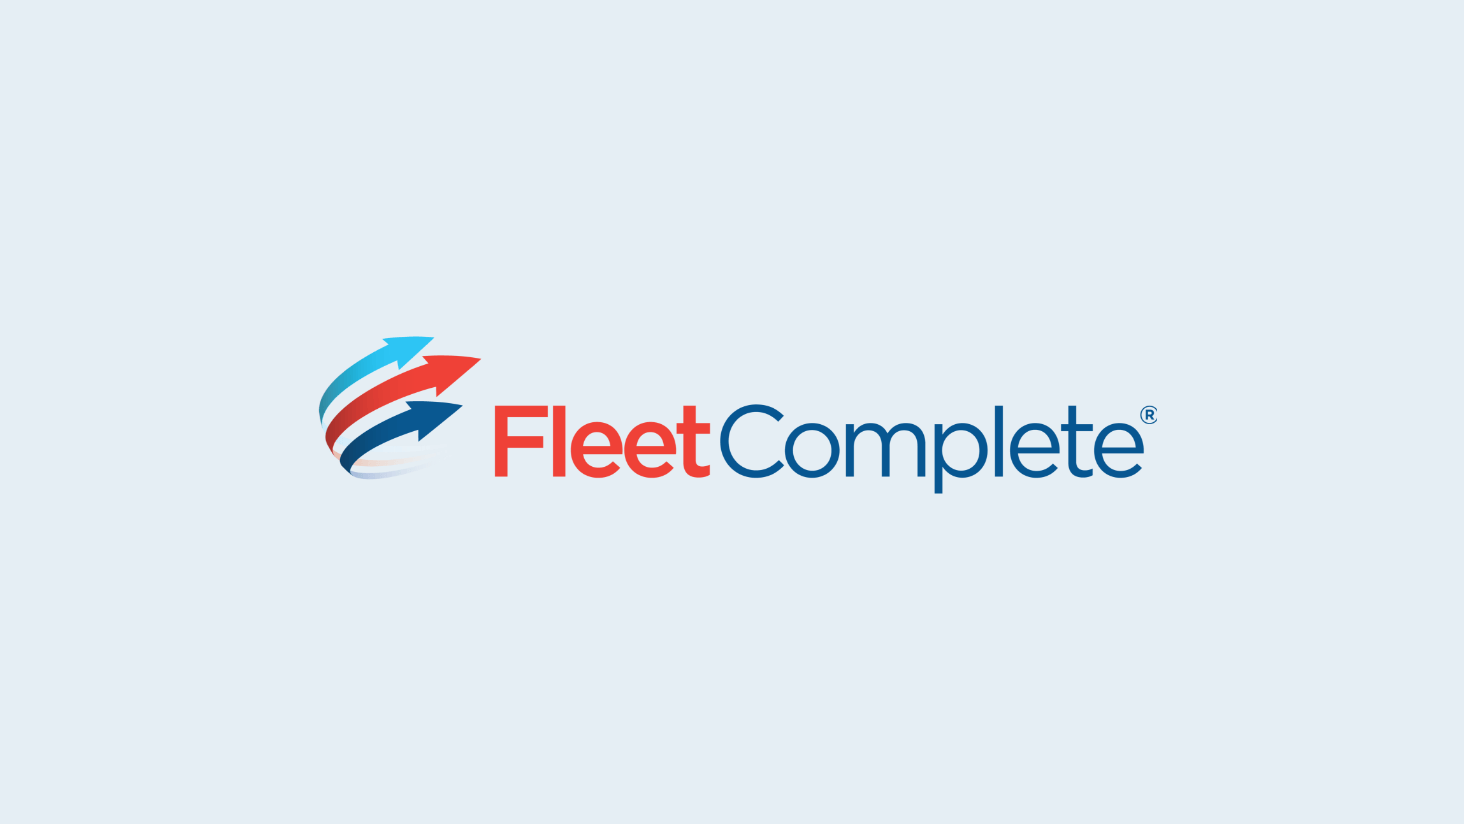 Fleet Complete